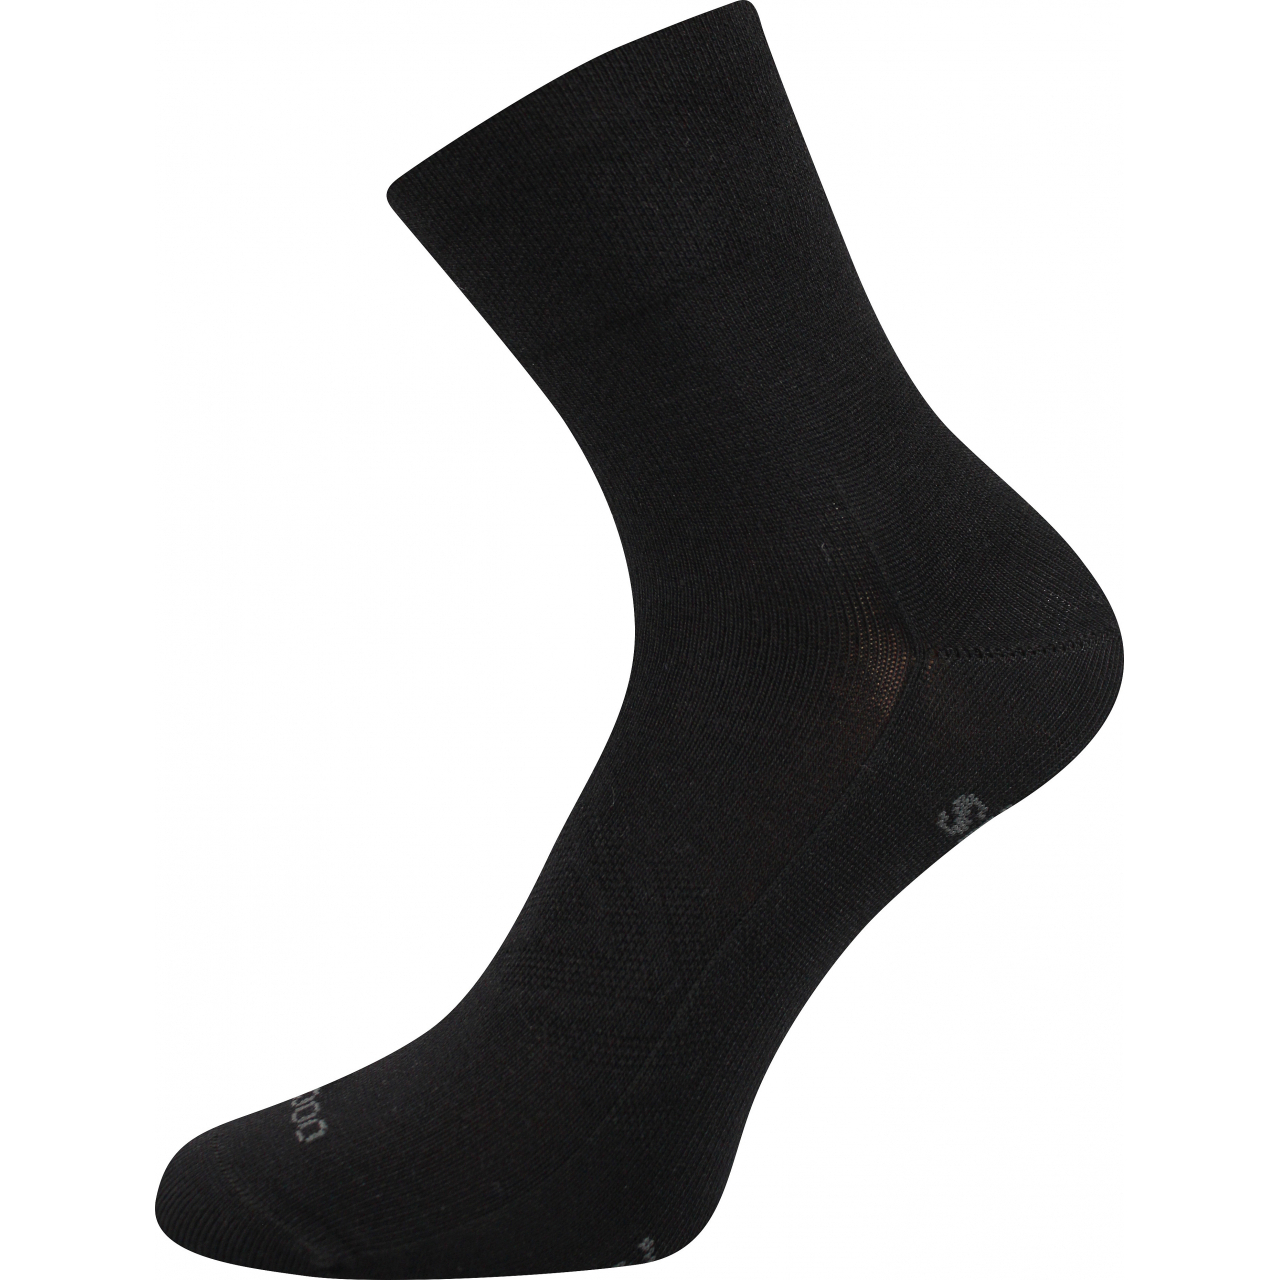 Ponožky sportovní unisex Voxx Baeron - černé, 39-42